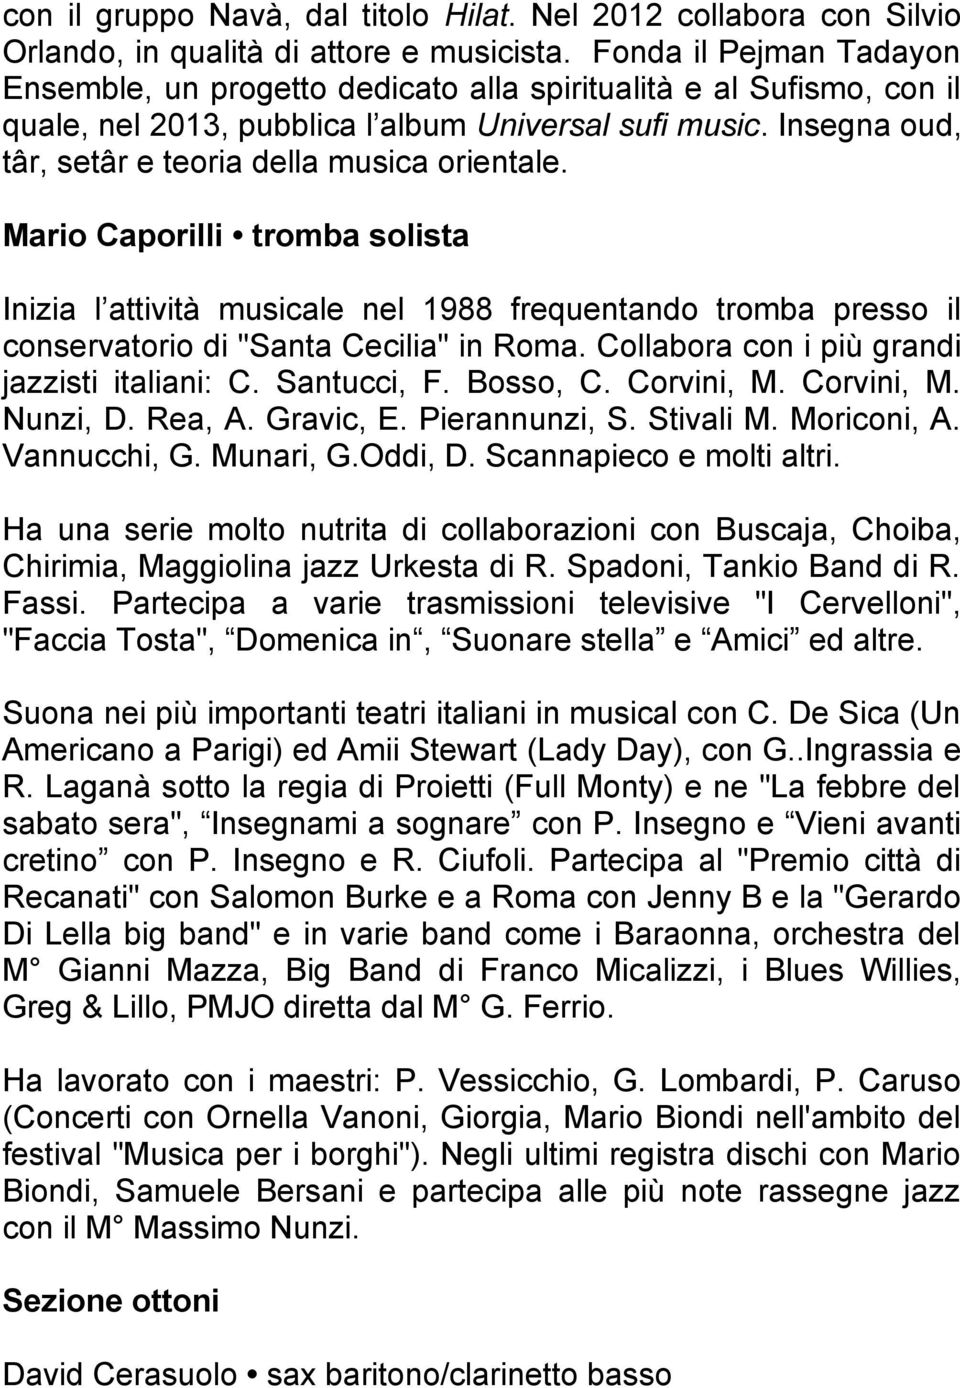 Insegna oud, târ, setâr e teoria della musica orientale. Mario Caporilli tromba solista Inizia l attività musicale nel 1988 frequentando tromba presso il conservatorio di "Santa Cecilia" in Roma.